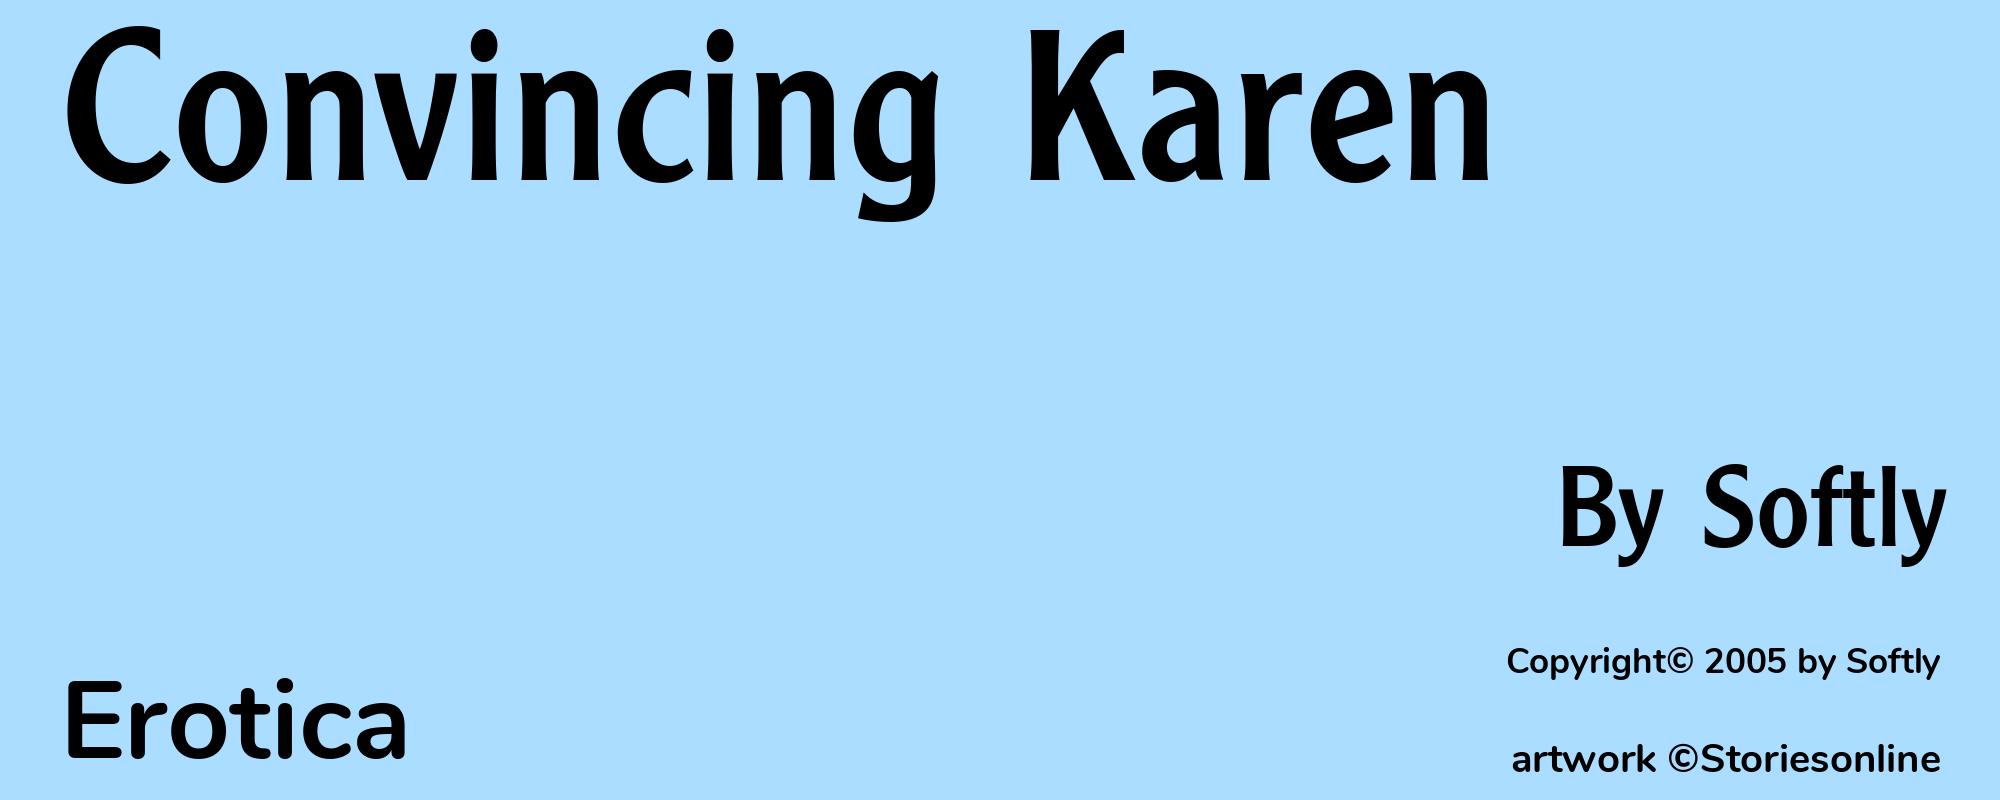 Convincing Karen - Cover